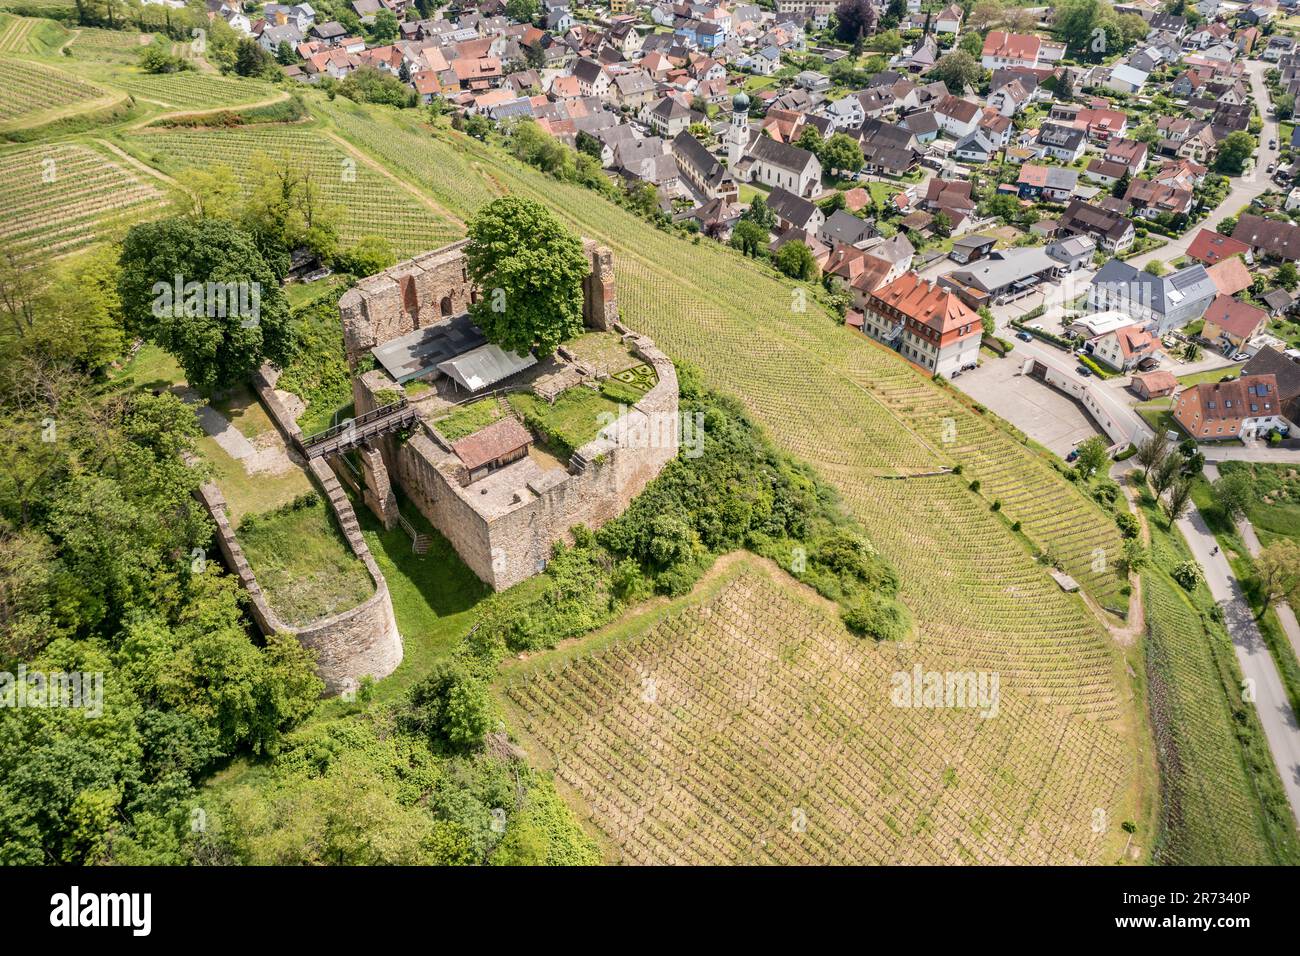 Ruin of castle Lichteneck, near village Hecklingen, aerial view, Breisgau, Germany Stock Photo